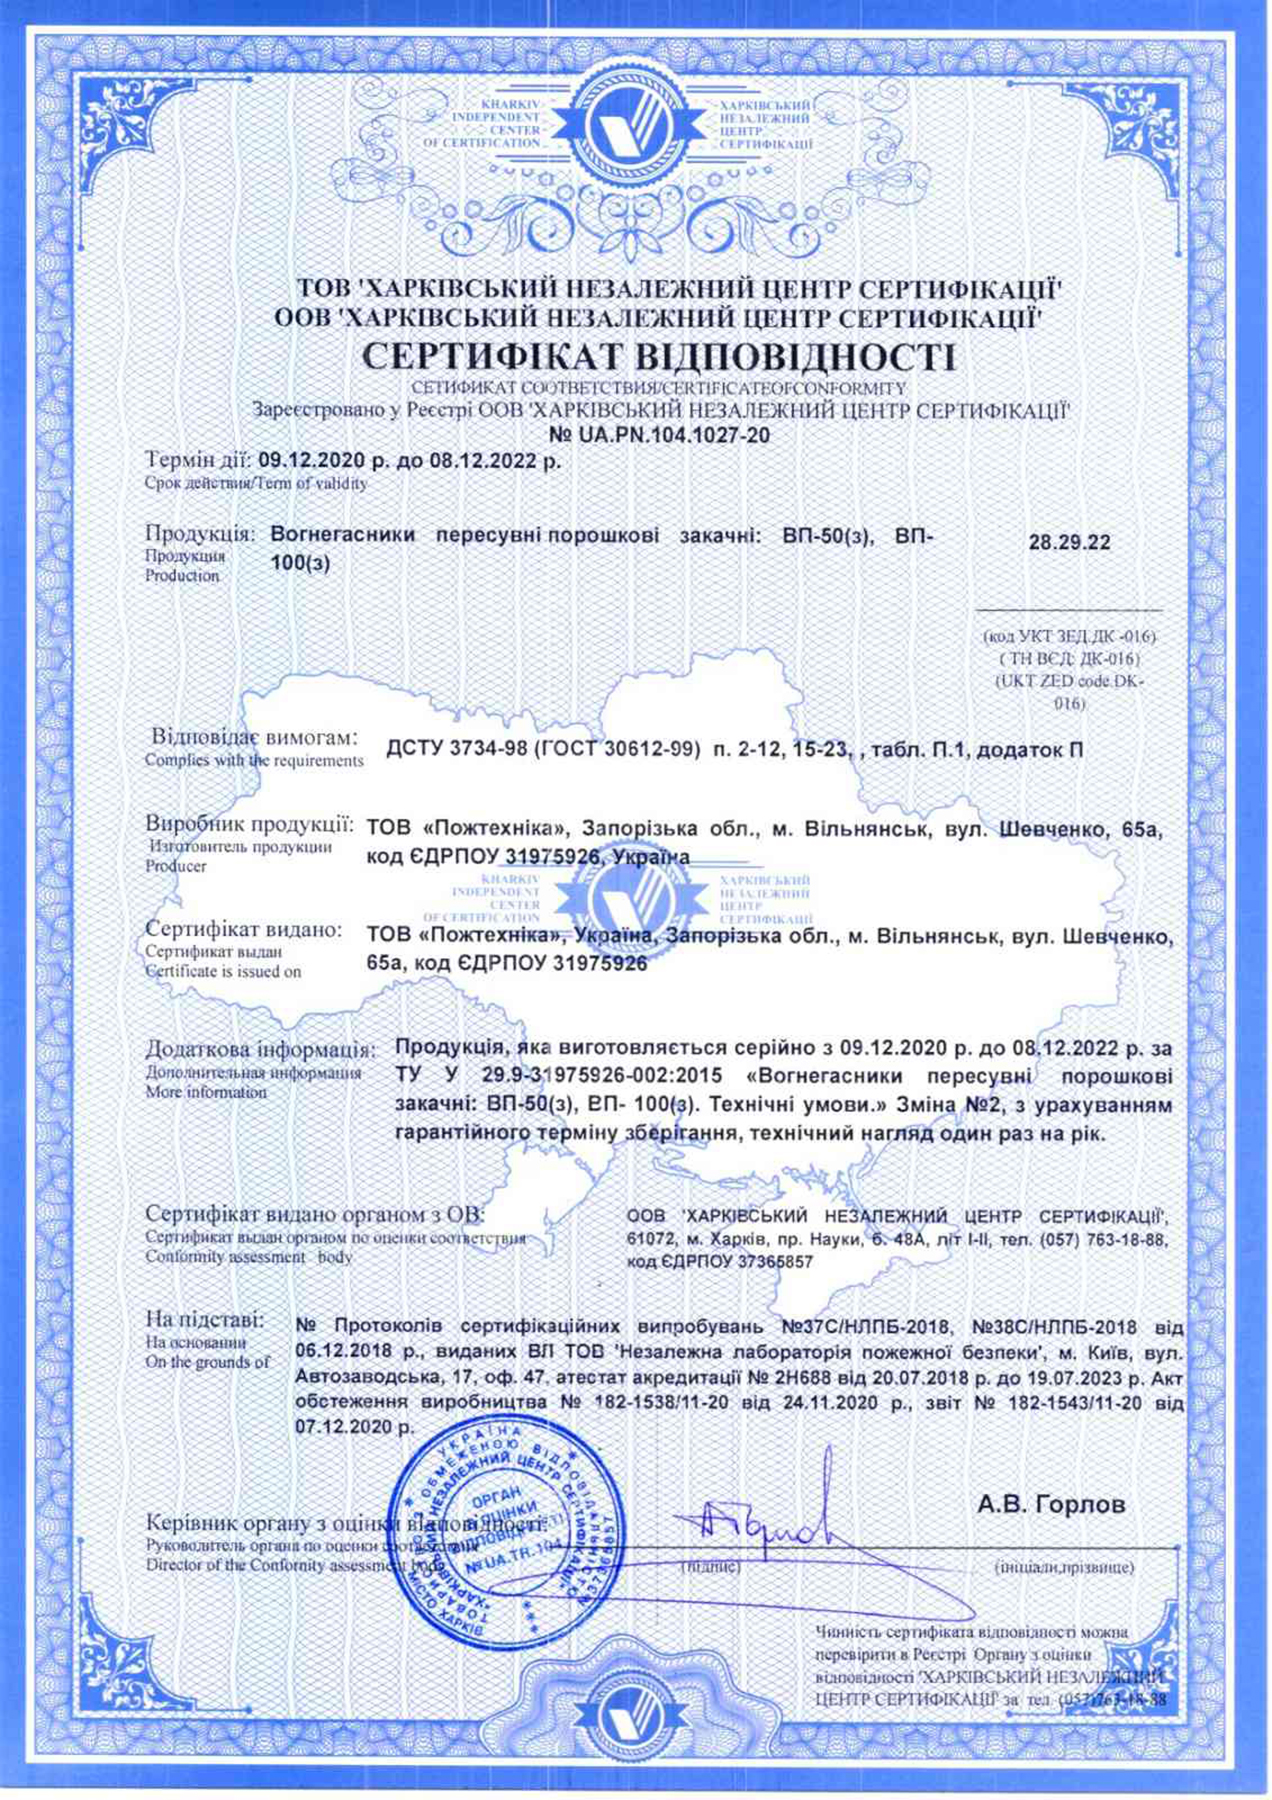 Сертифікат відповідності на порошкові переносни вогнегаснікі — ВП-50(з), ВП-100(з)